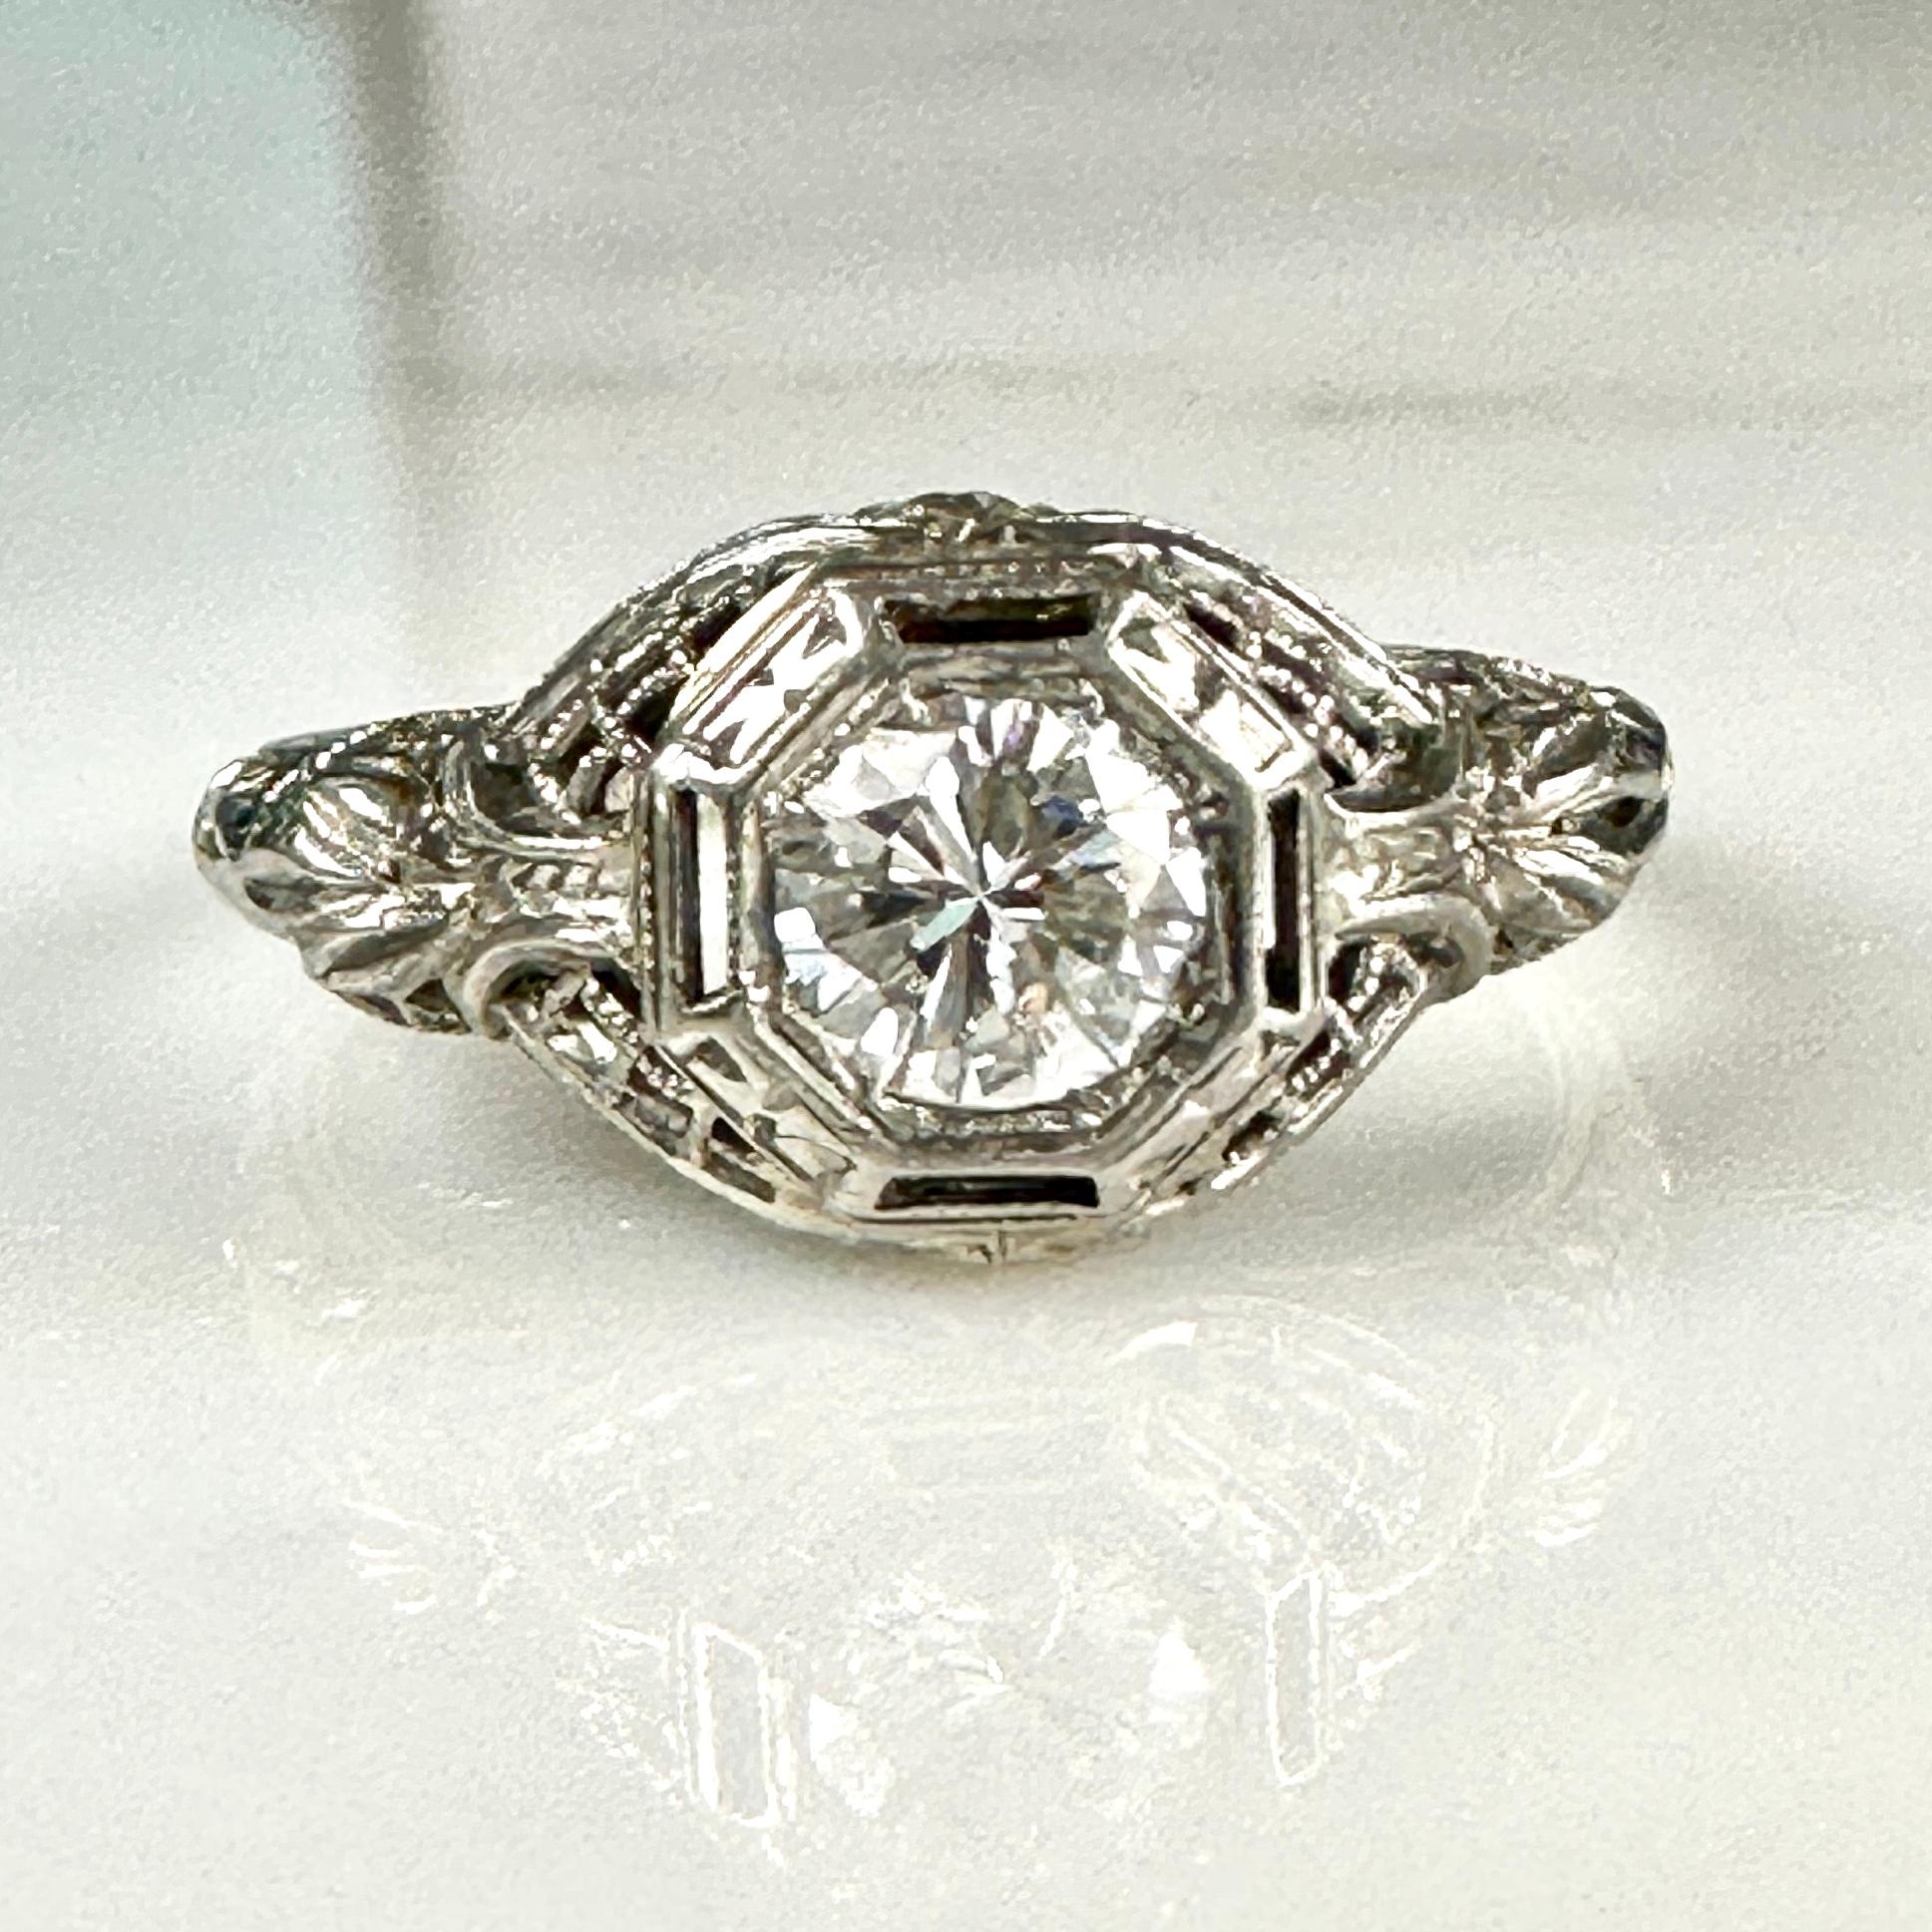 Einzelheiten:
Schöne zarte Edwardian 18K Weißgold filigrane & Diamant-Ring-würde eine schöne Hochzeit Ring! Der Diamant hat ein Gewicht von 0,50 Karat und ist in einem sehr detaillierten, filigranen Design gefasst. Das Filigran ist in erstaunlichem